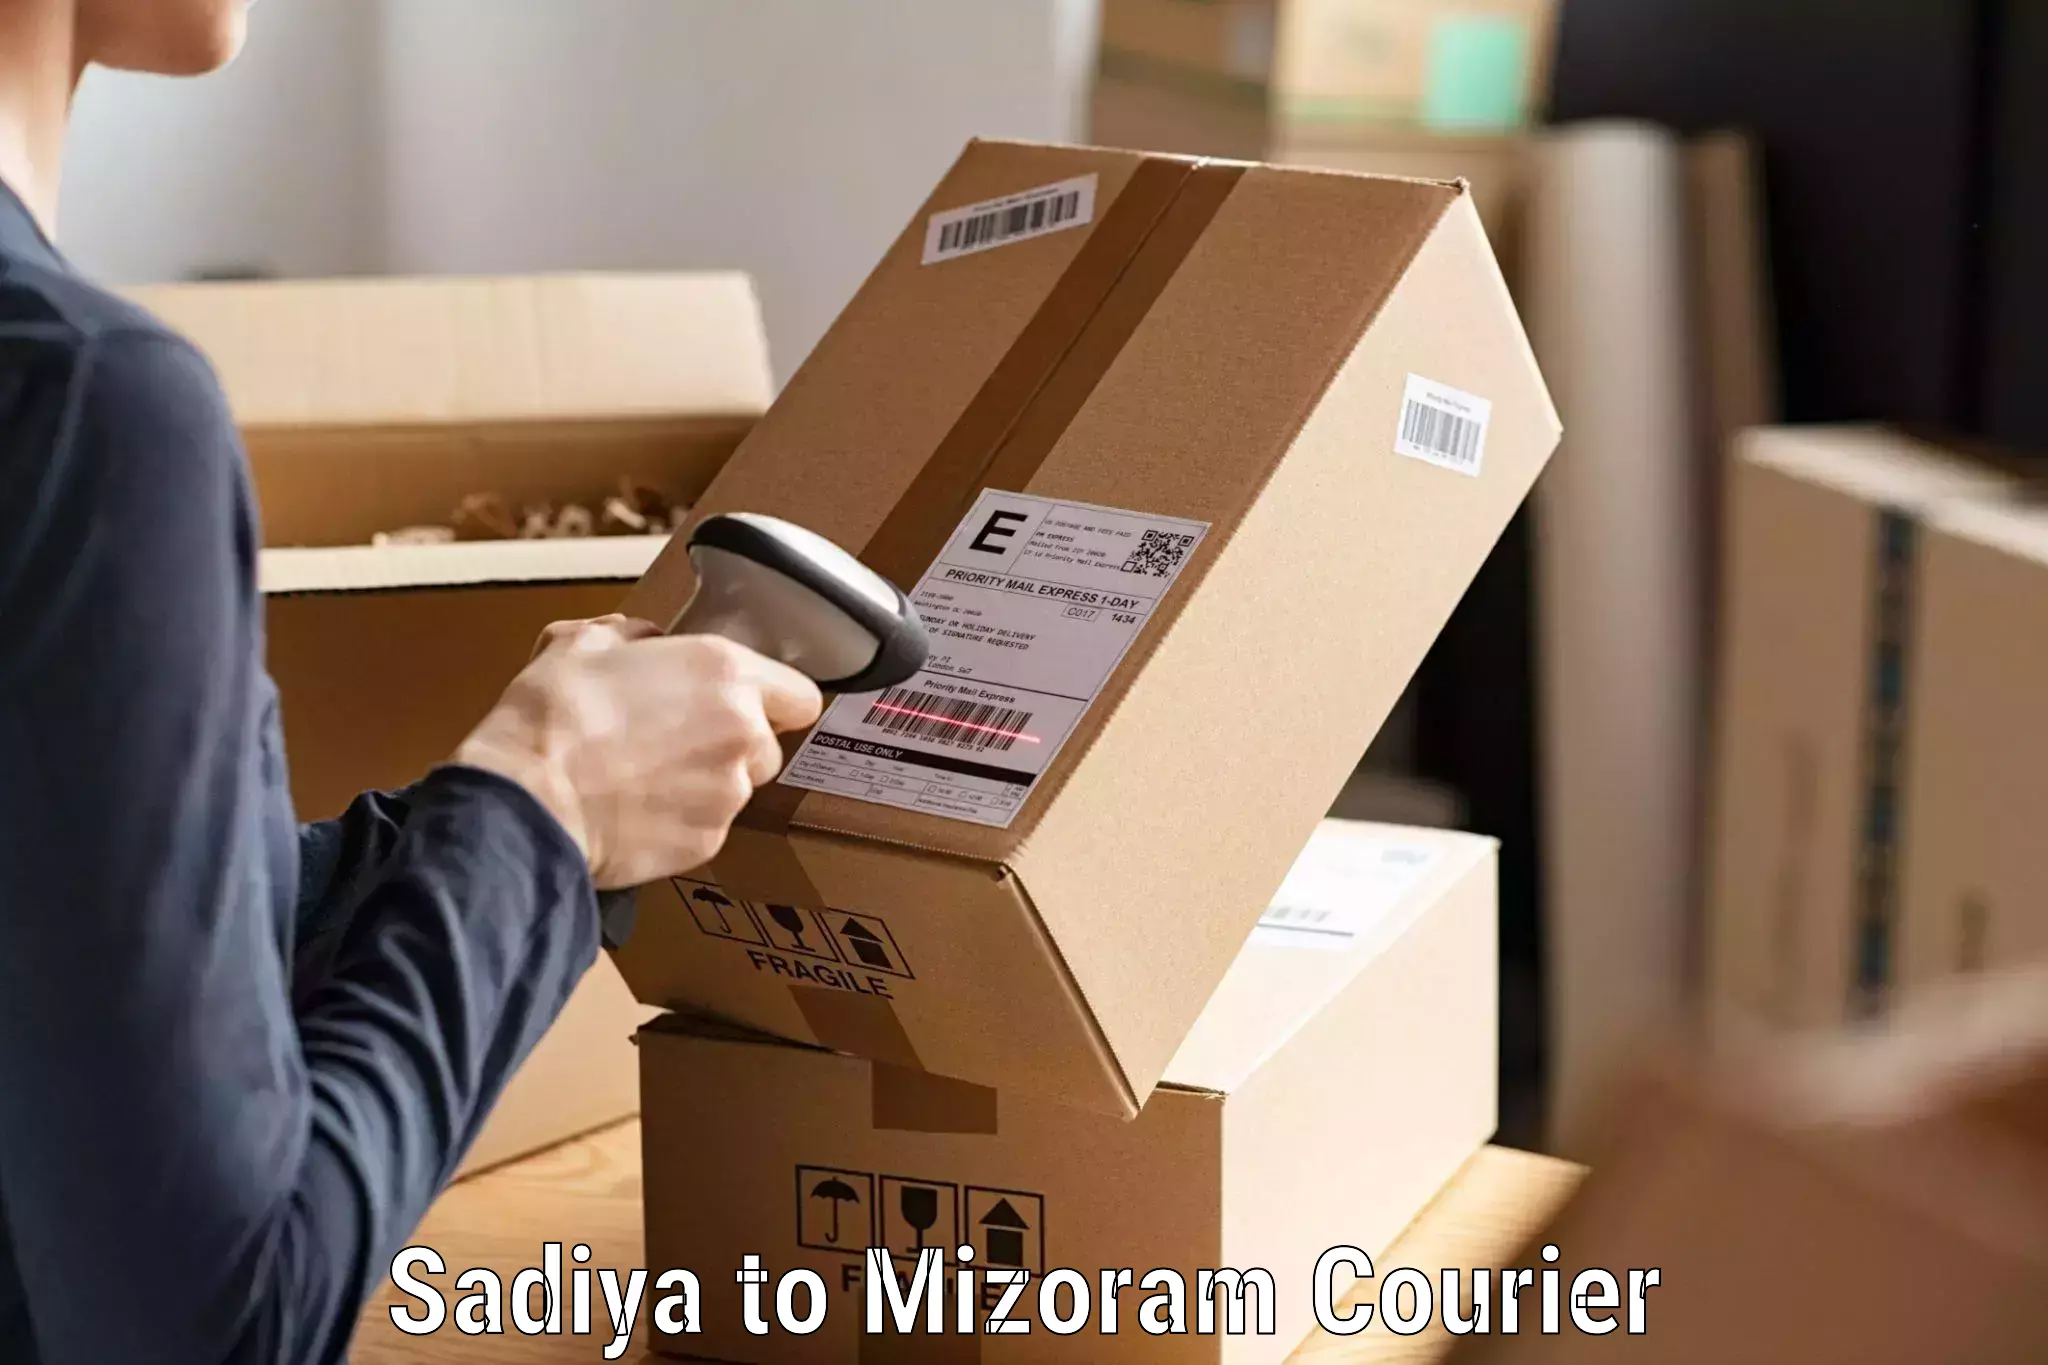 Individual parcel service Sadiya to Darlawn